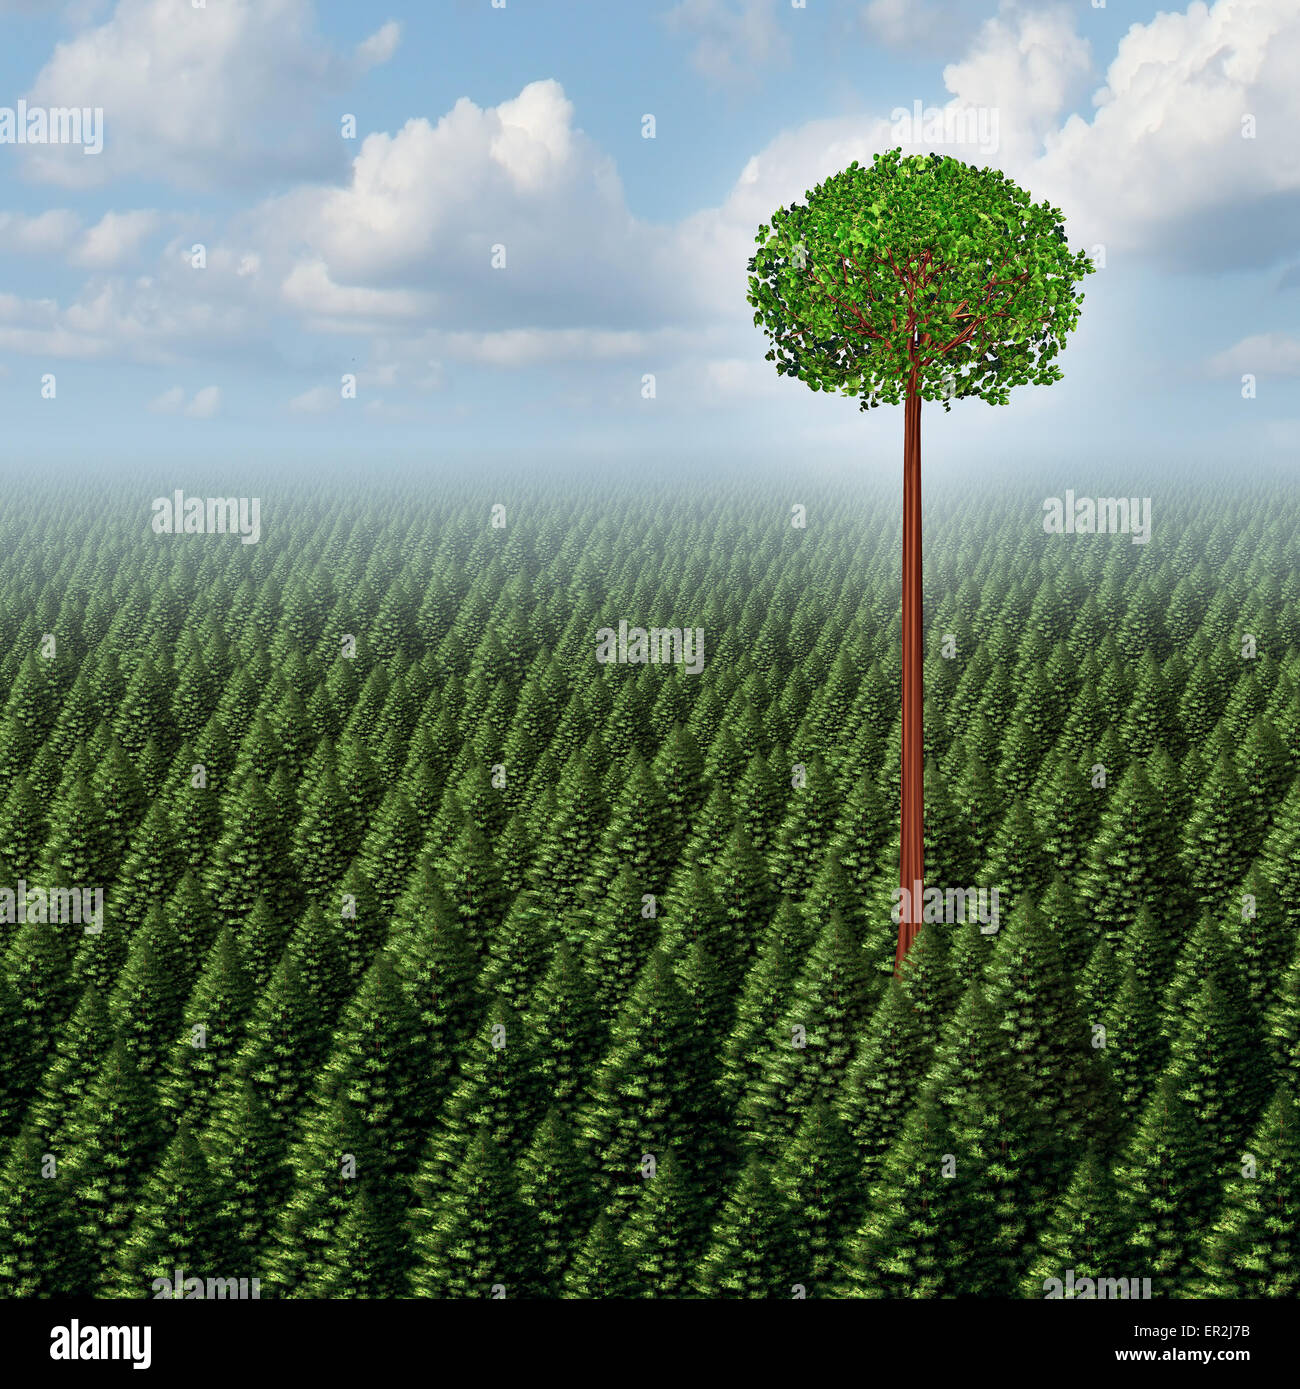 Heben Sie sich von der Masse-Konzept als ein Wald von immergrünen Bäumen mit einem erfolgreichen Blatt Baum stehend hoch über den Wettbewerb Stockfoto